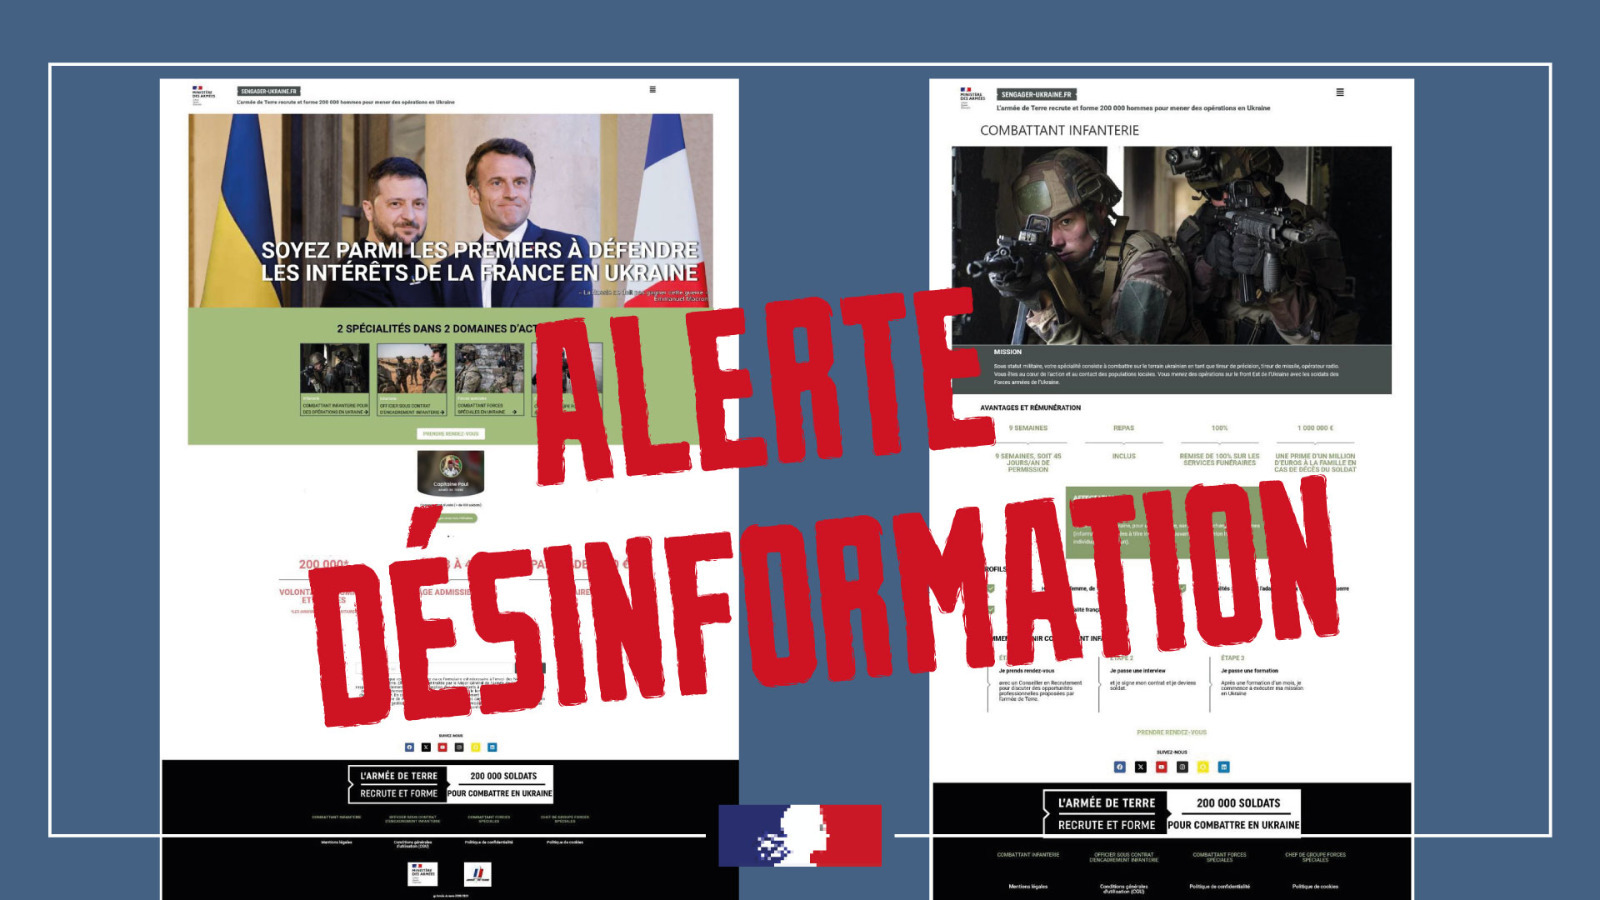 Министерство обороны Франции и правительственные киберподразделения проводят расследование.